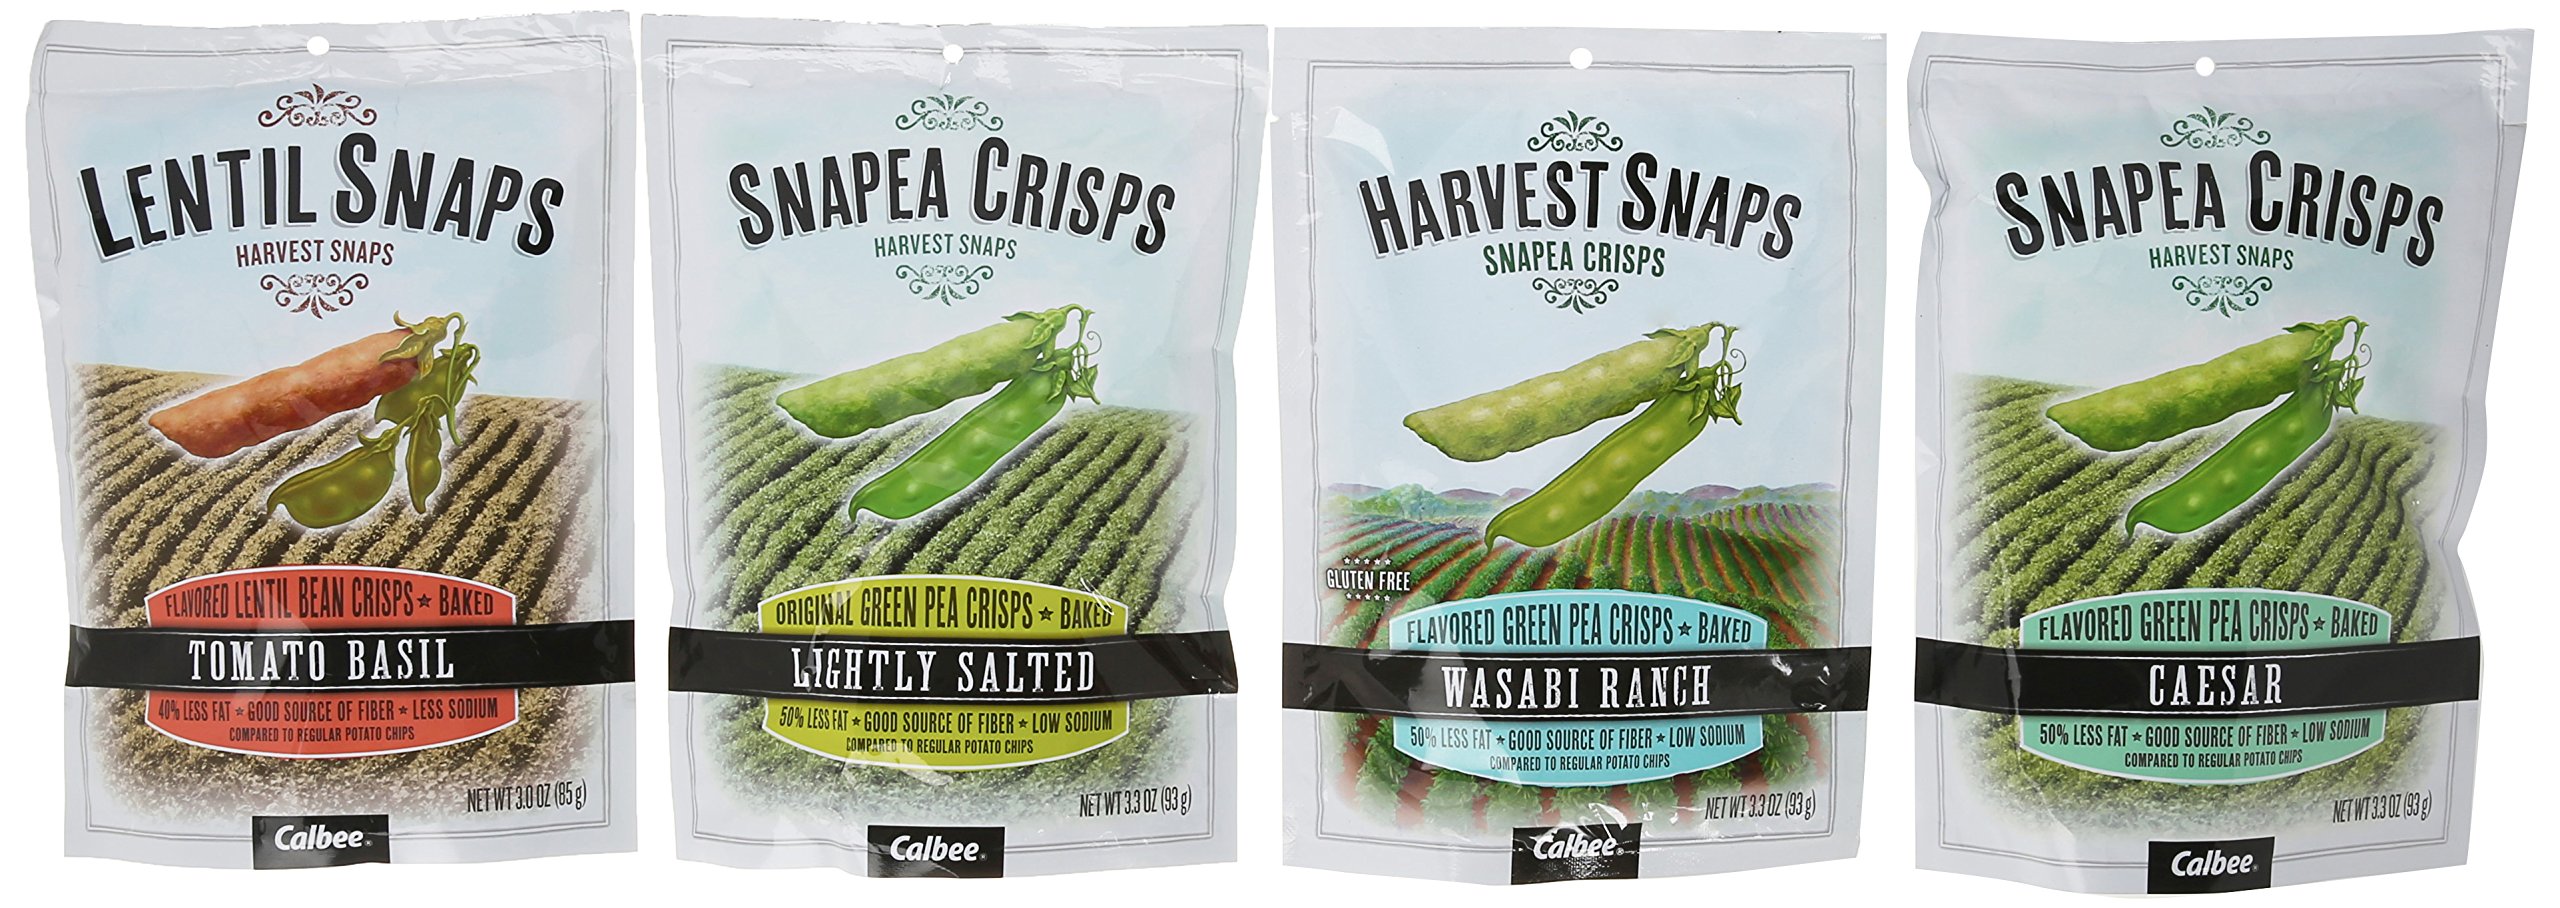 Harvest Snaps Lightly Salted Green Pea Crisps, 14 oz.